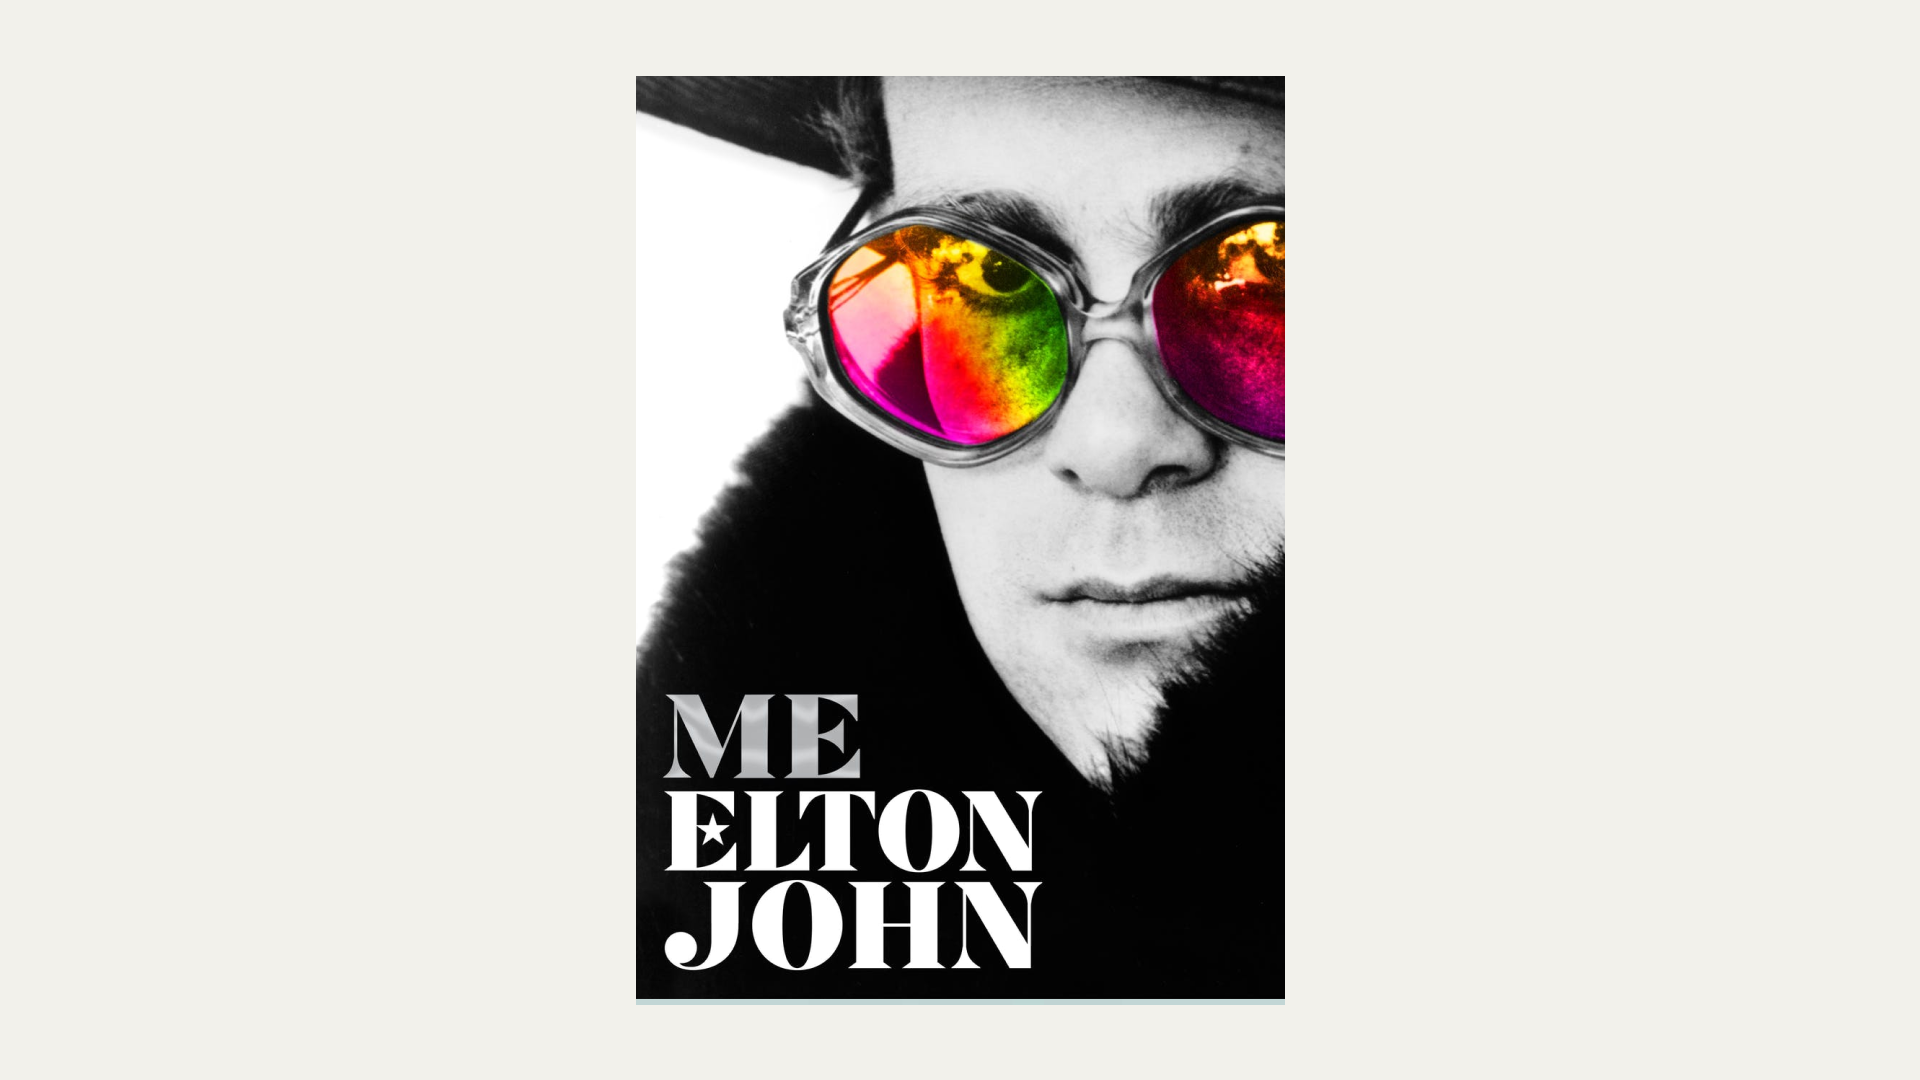 “Me” by Elton John